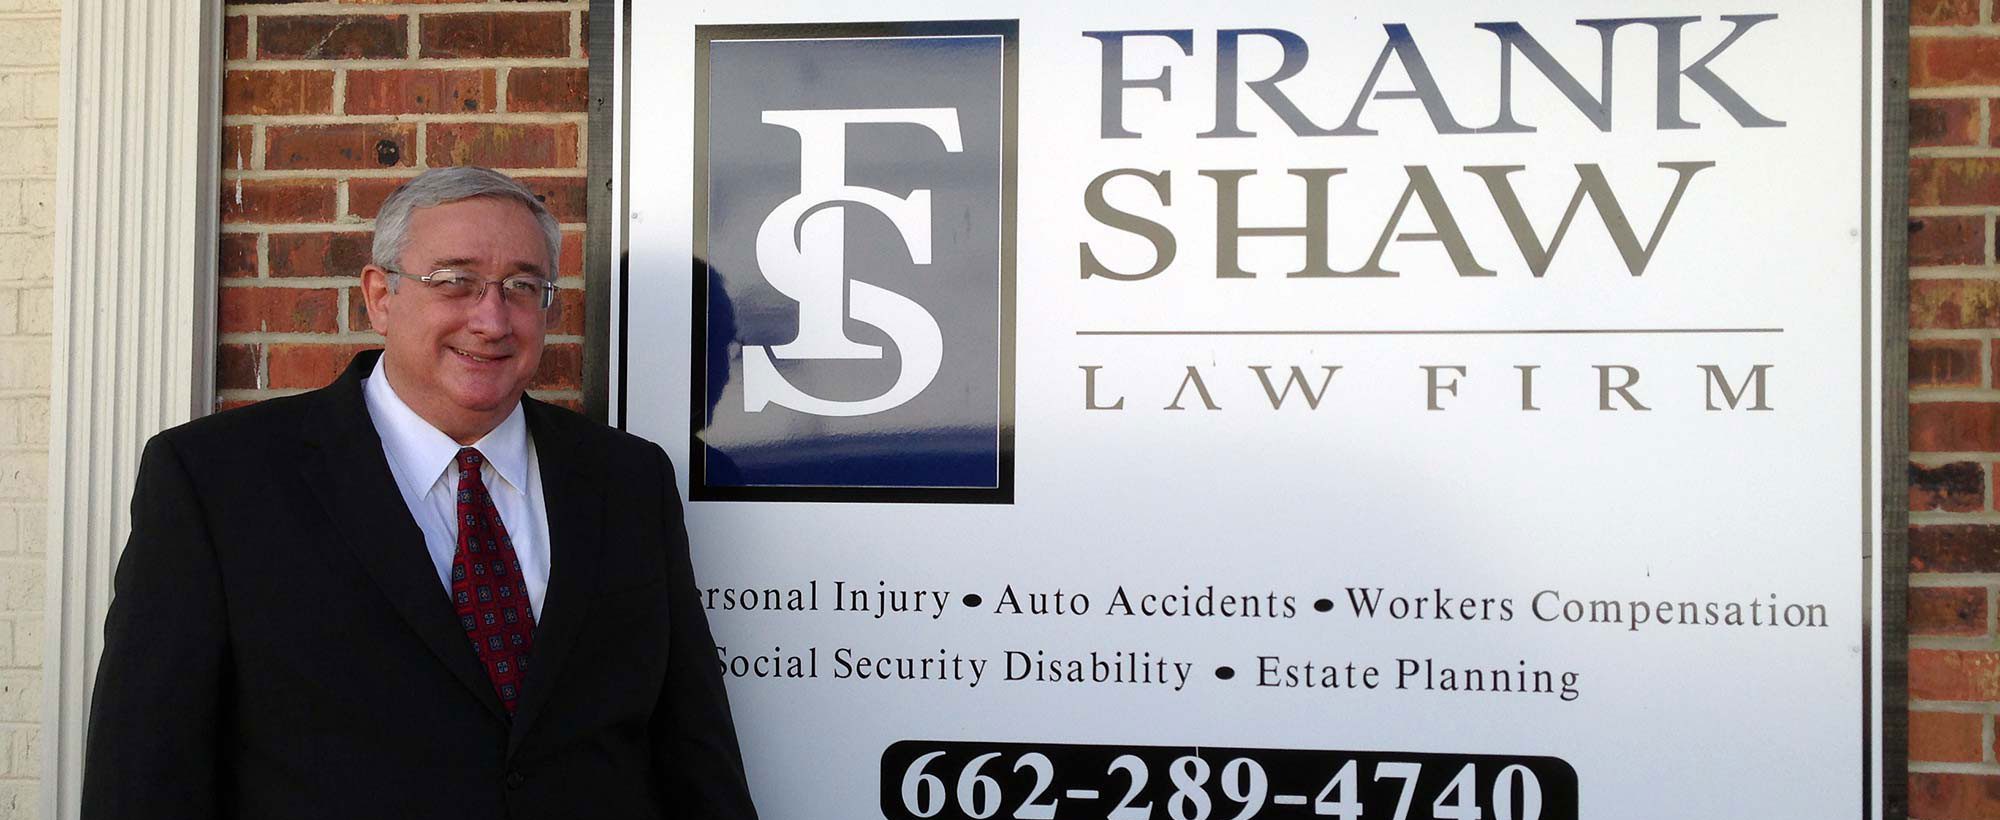 Frank Shaw Law Firm, Kosciusko, MS 